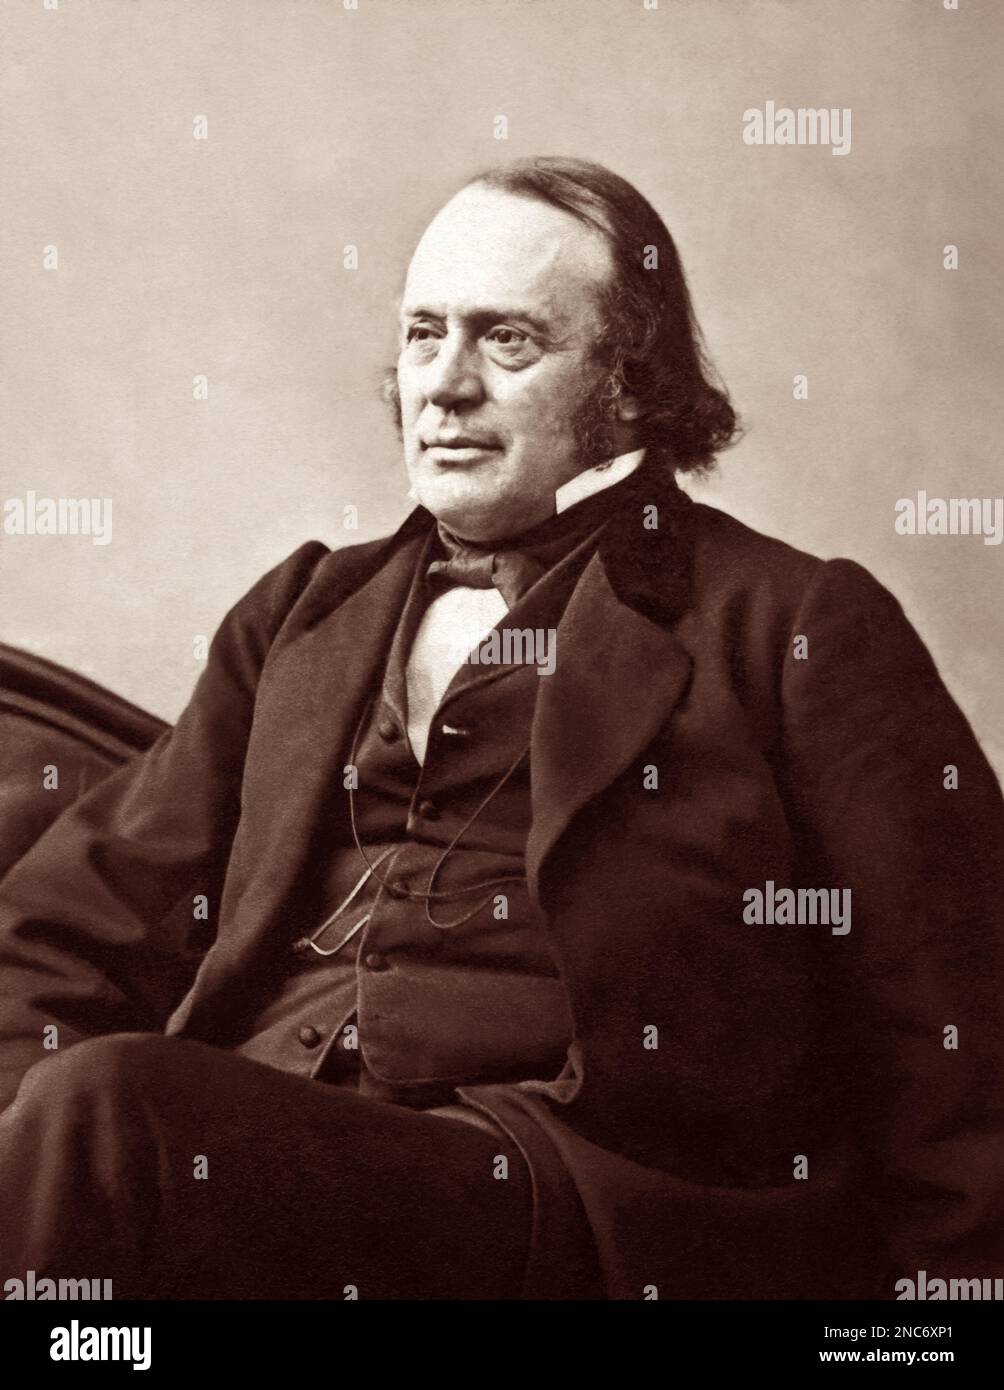 Louis Agassiz (1807-1873), der berühmte Schweizer Geologe, Zoologe, Paläontologe und Naturwissenschaftler, war Professor an der Harvard University und ein offener Kritiker der Darwinschen Evolutionstheorie. (c1864 Foto von A. Sonrel) Stockfoto